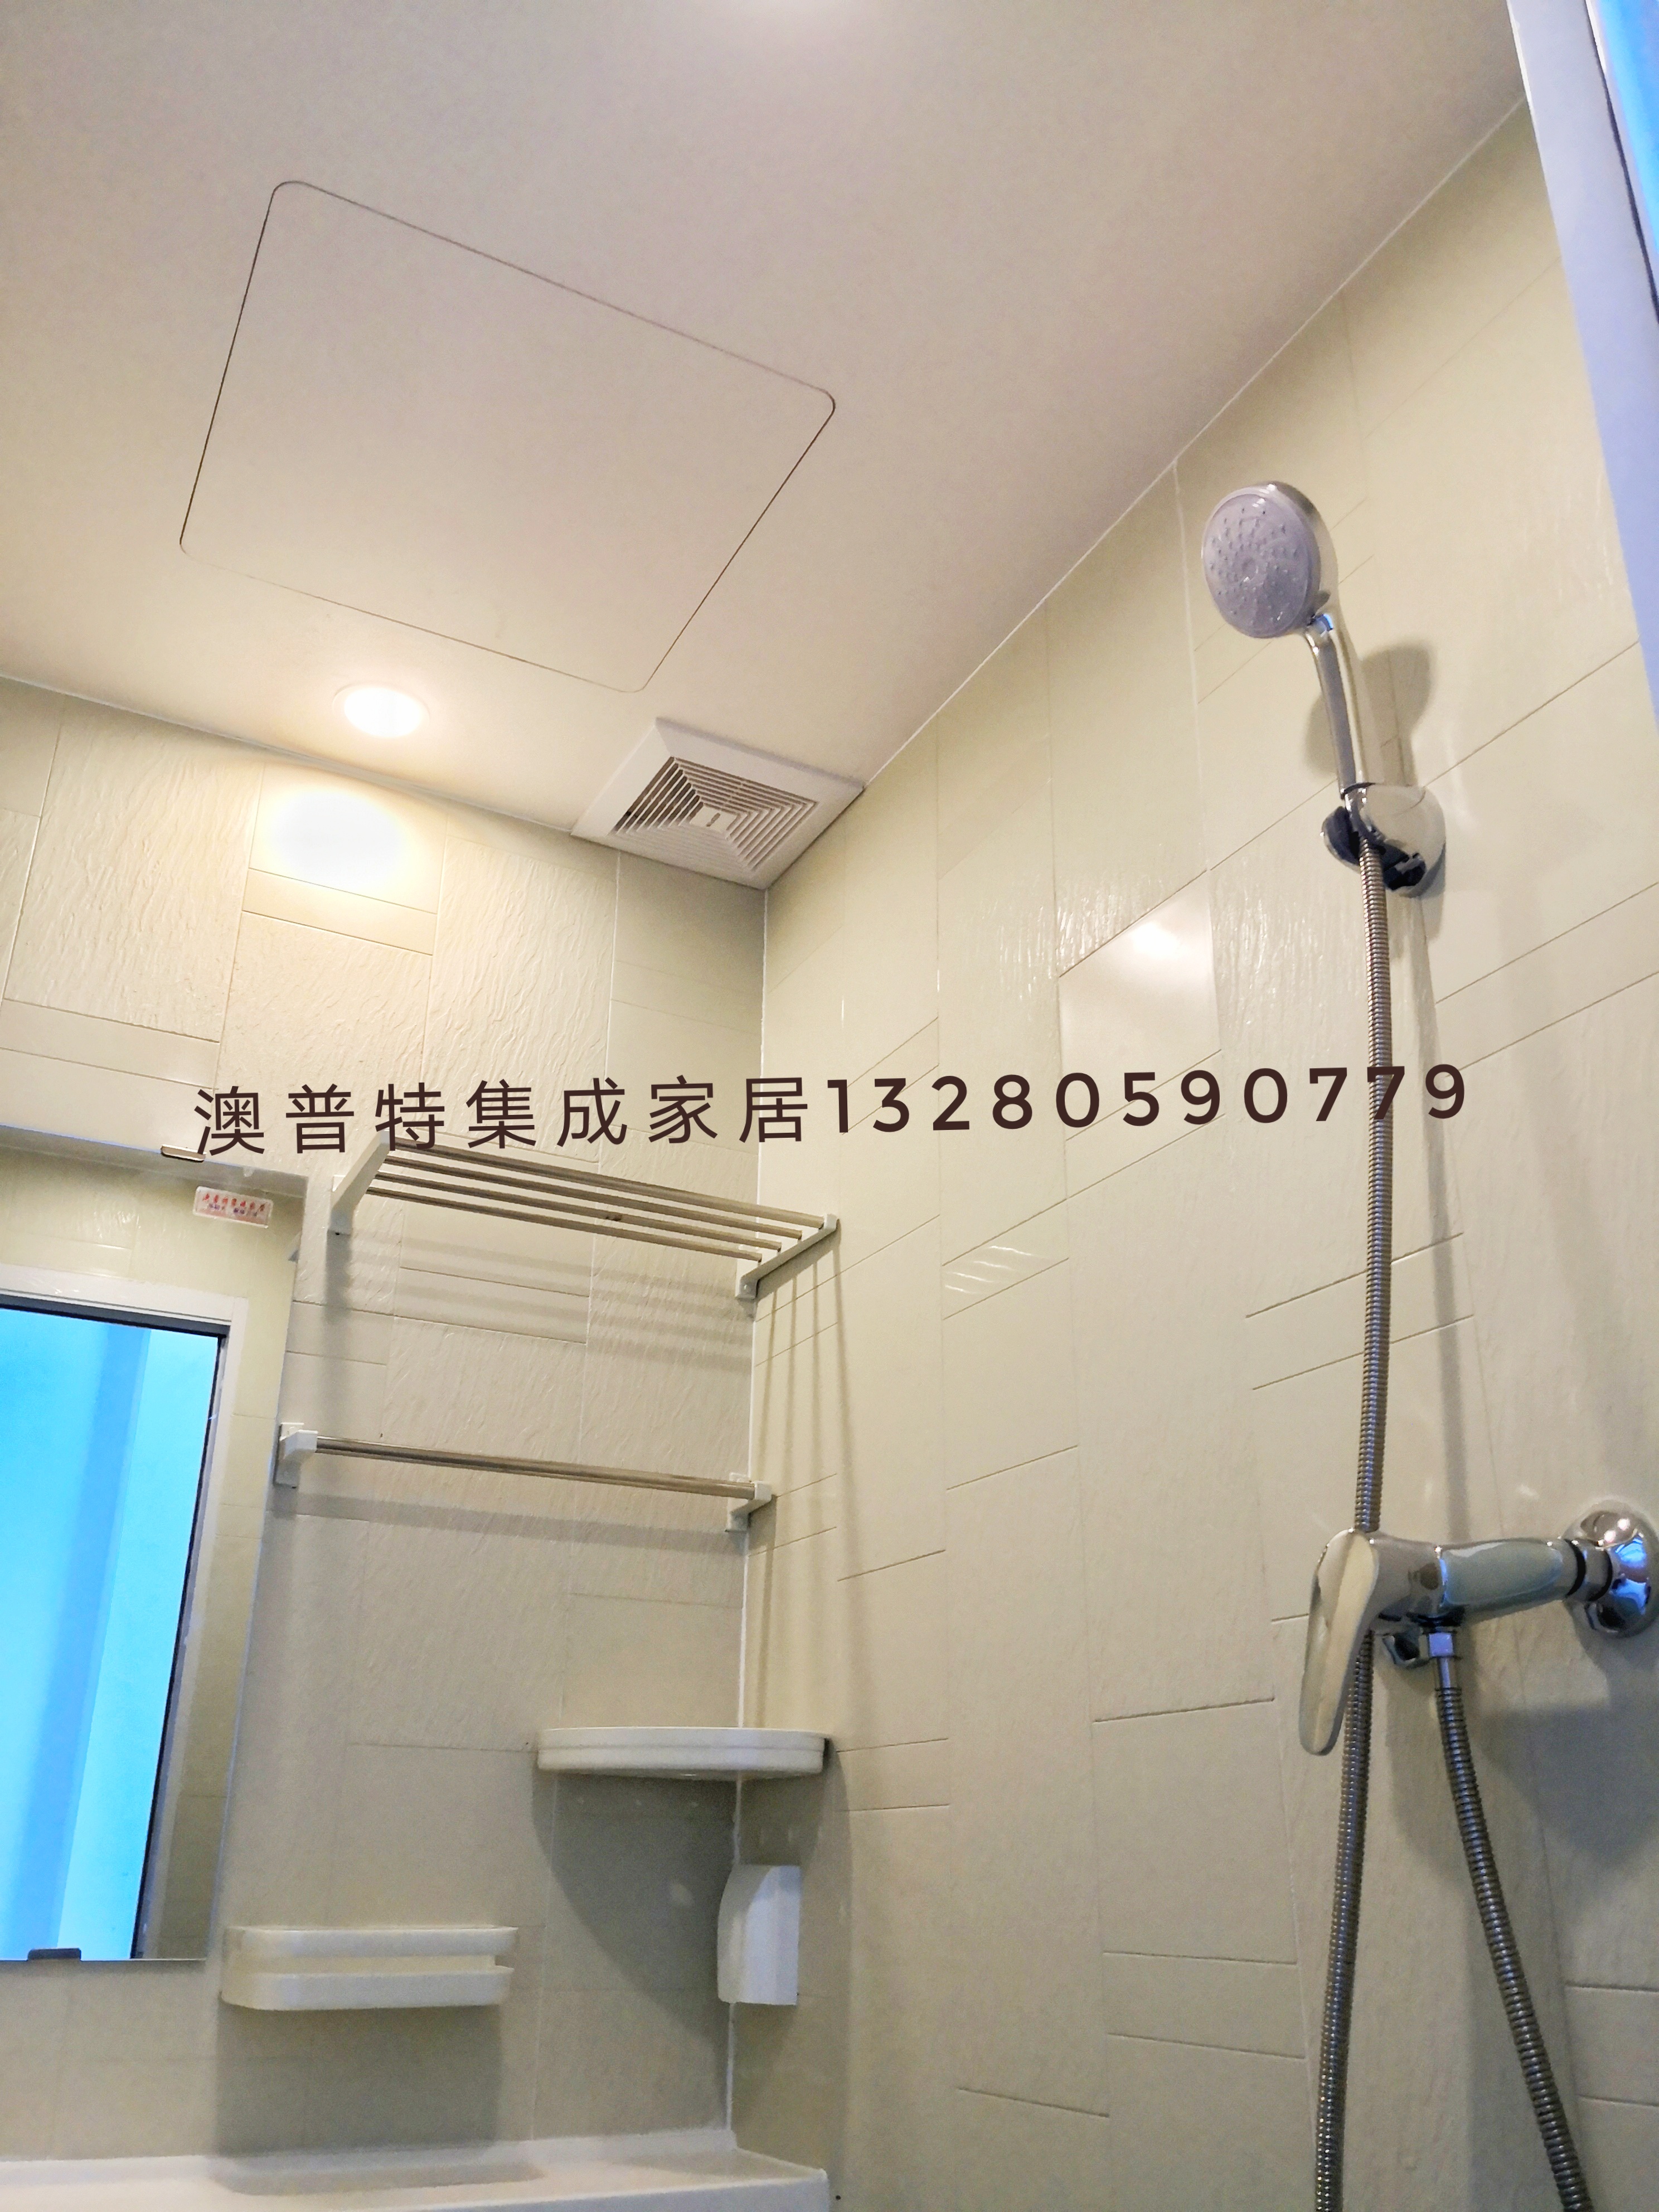 整体卫浴 集成式整体卫生间 临沂澳普特集成家居 日式浴室 厂家价格